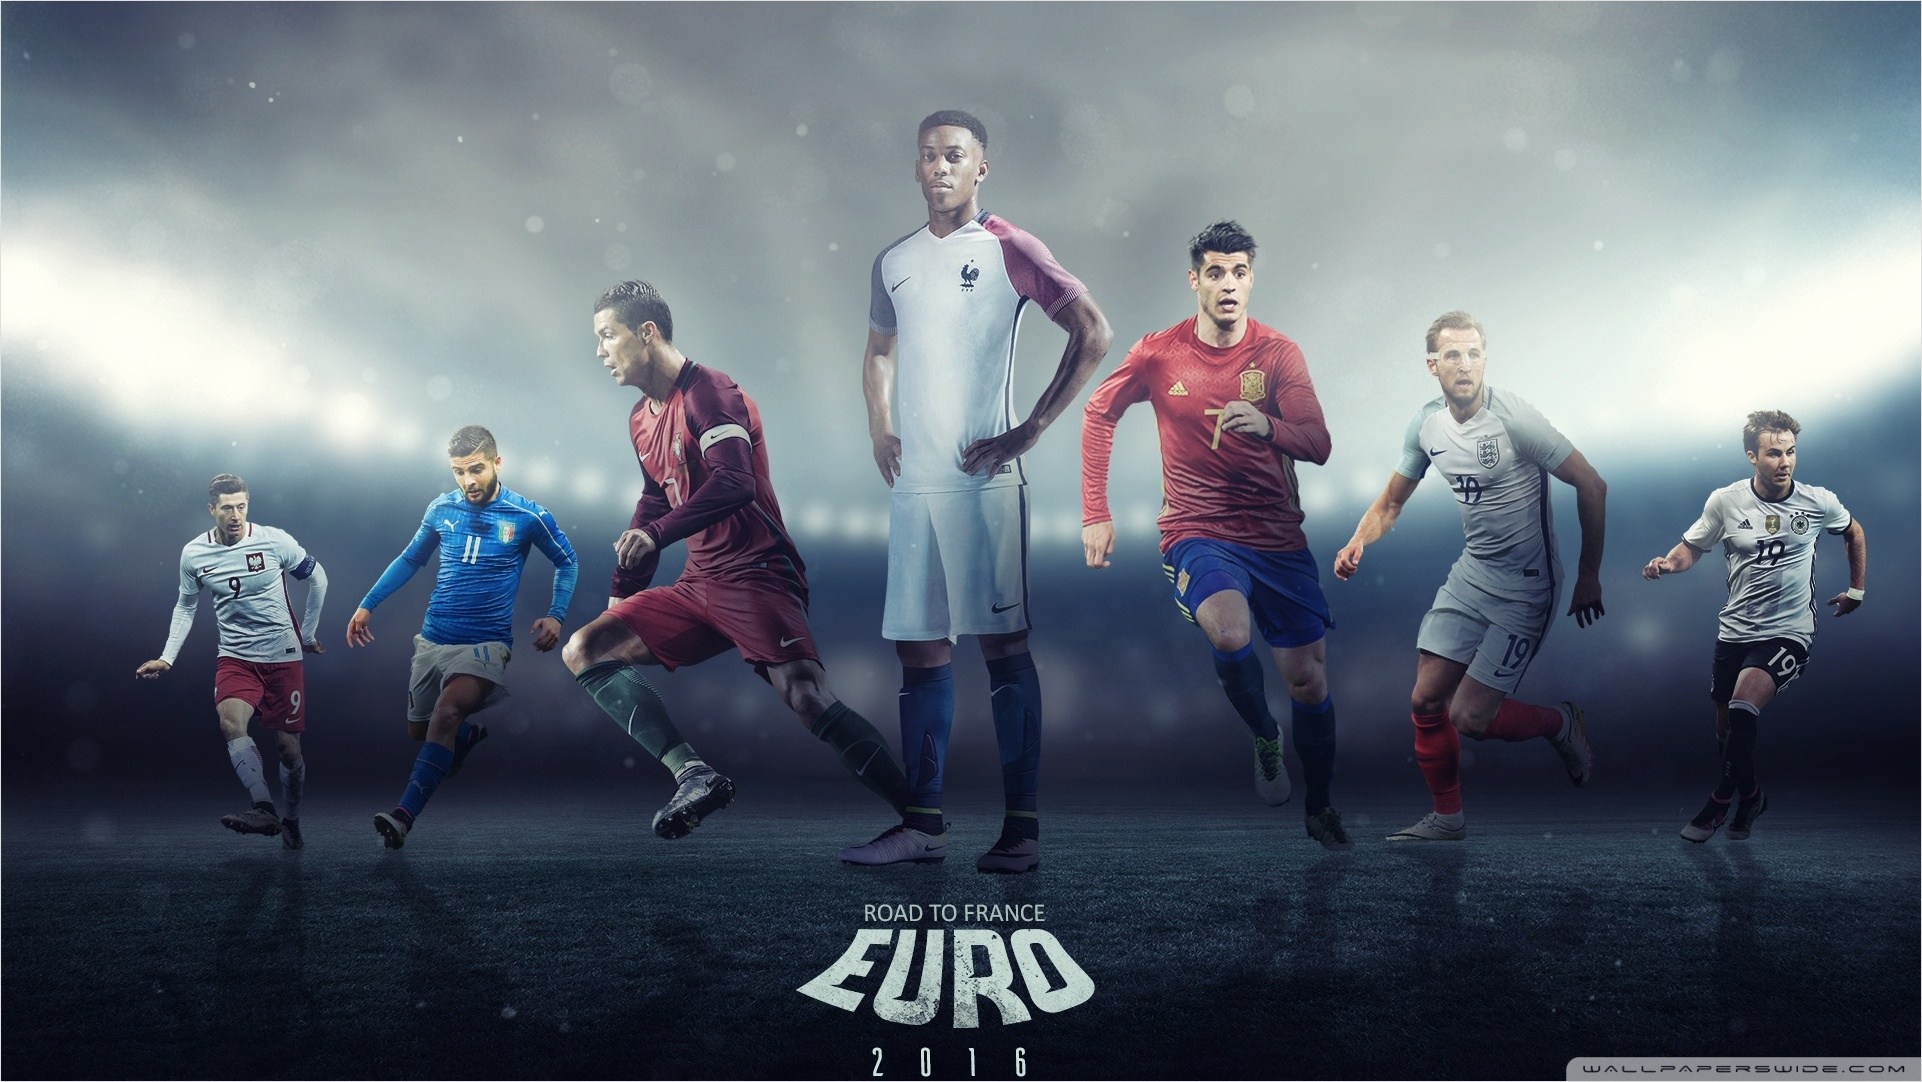 Cool Football Wallpaper Desktop On Wallpaper Hd 1920 - Euro 2016 , HD Wallpaper & Backgrounds